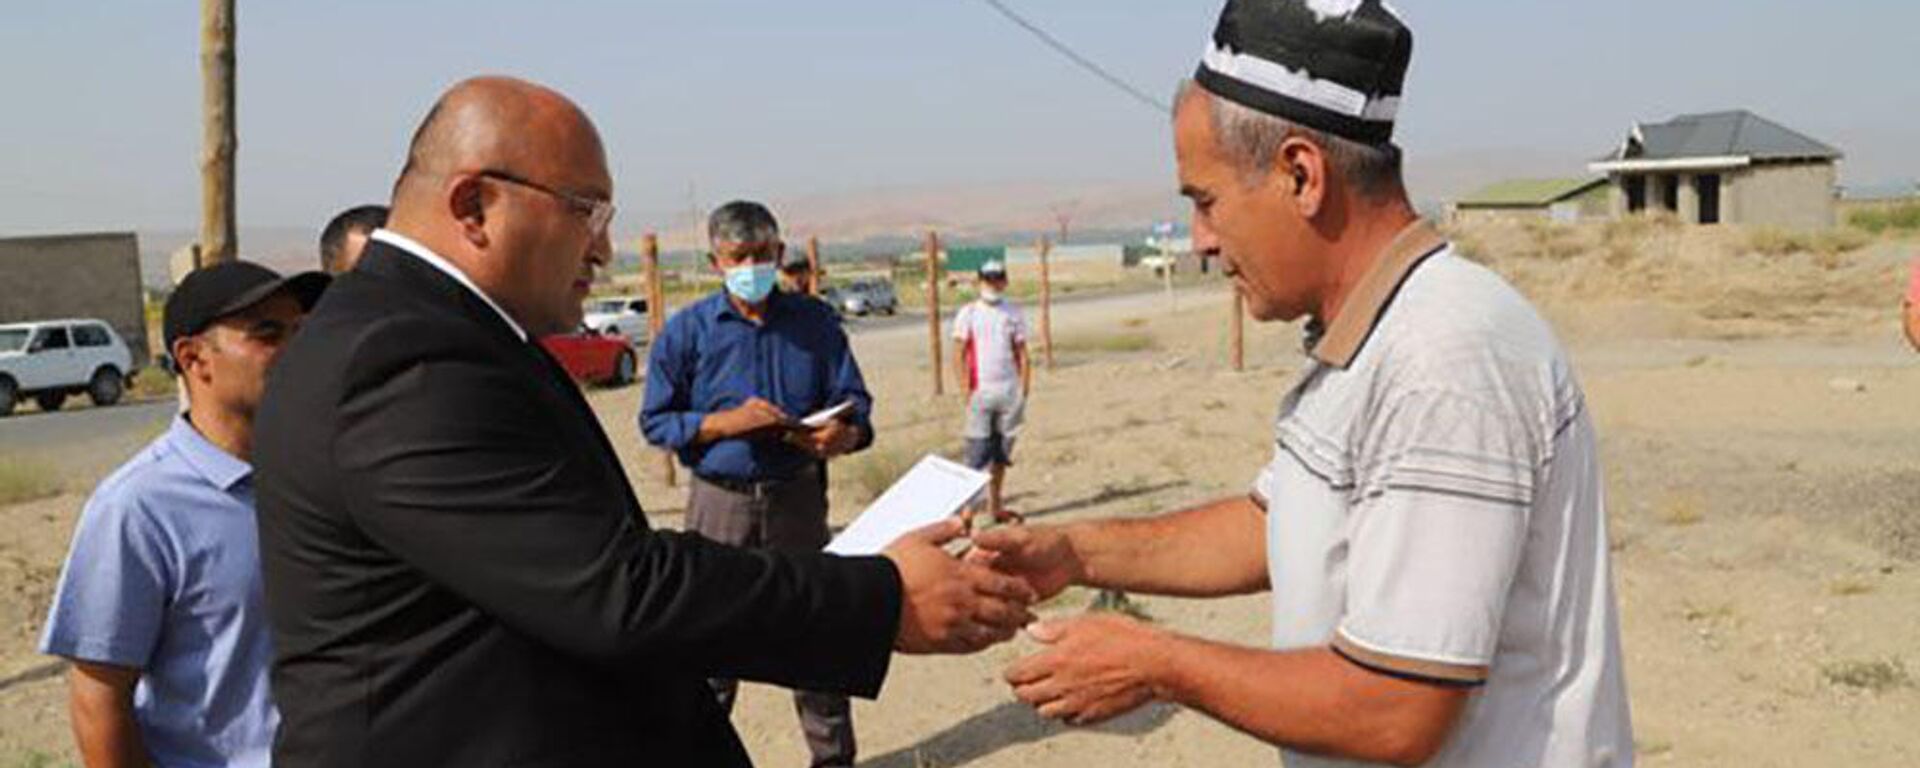 Глава Исфары вручает земельные сертификаты семьям погибших в приграничном конфликте - Sputnik Таджикистан, 1920, 26.08.2021